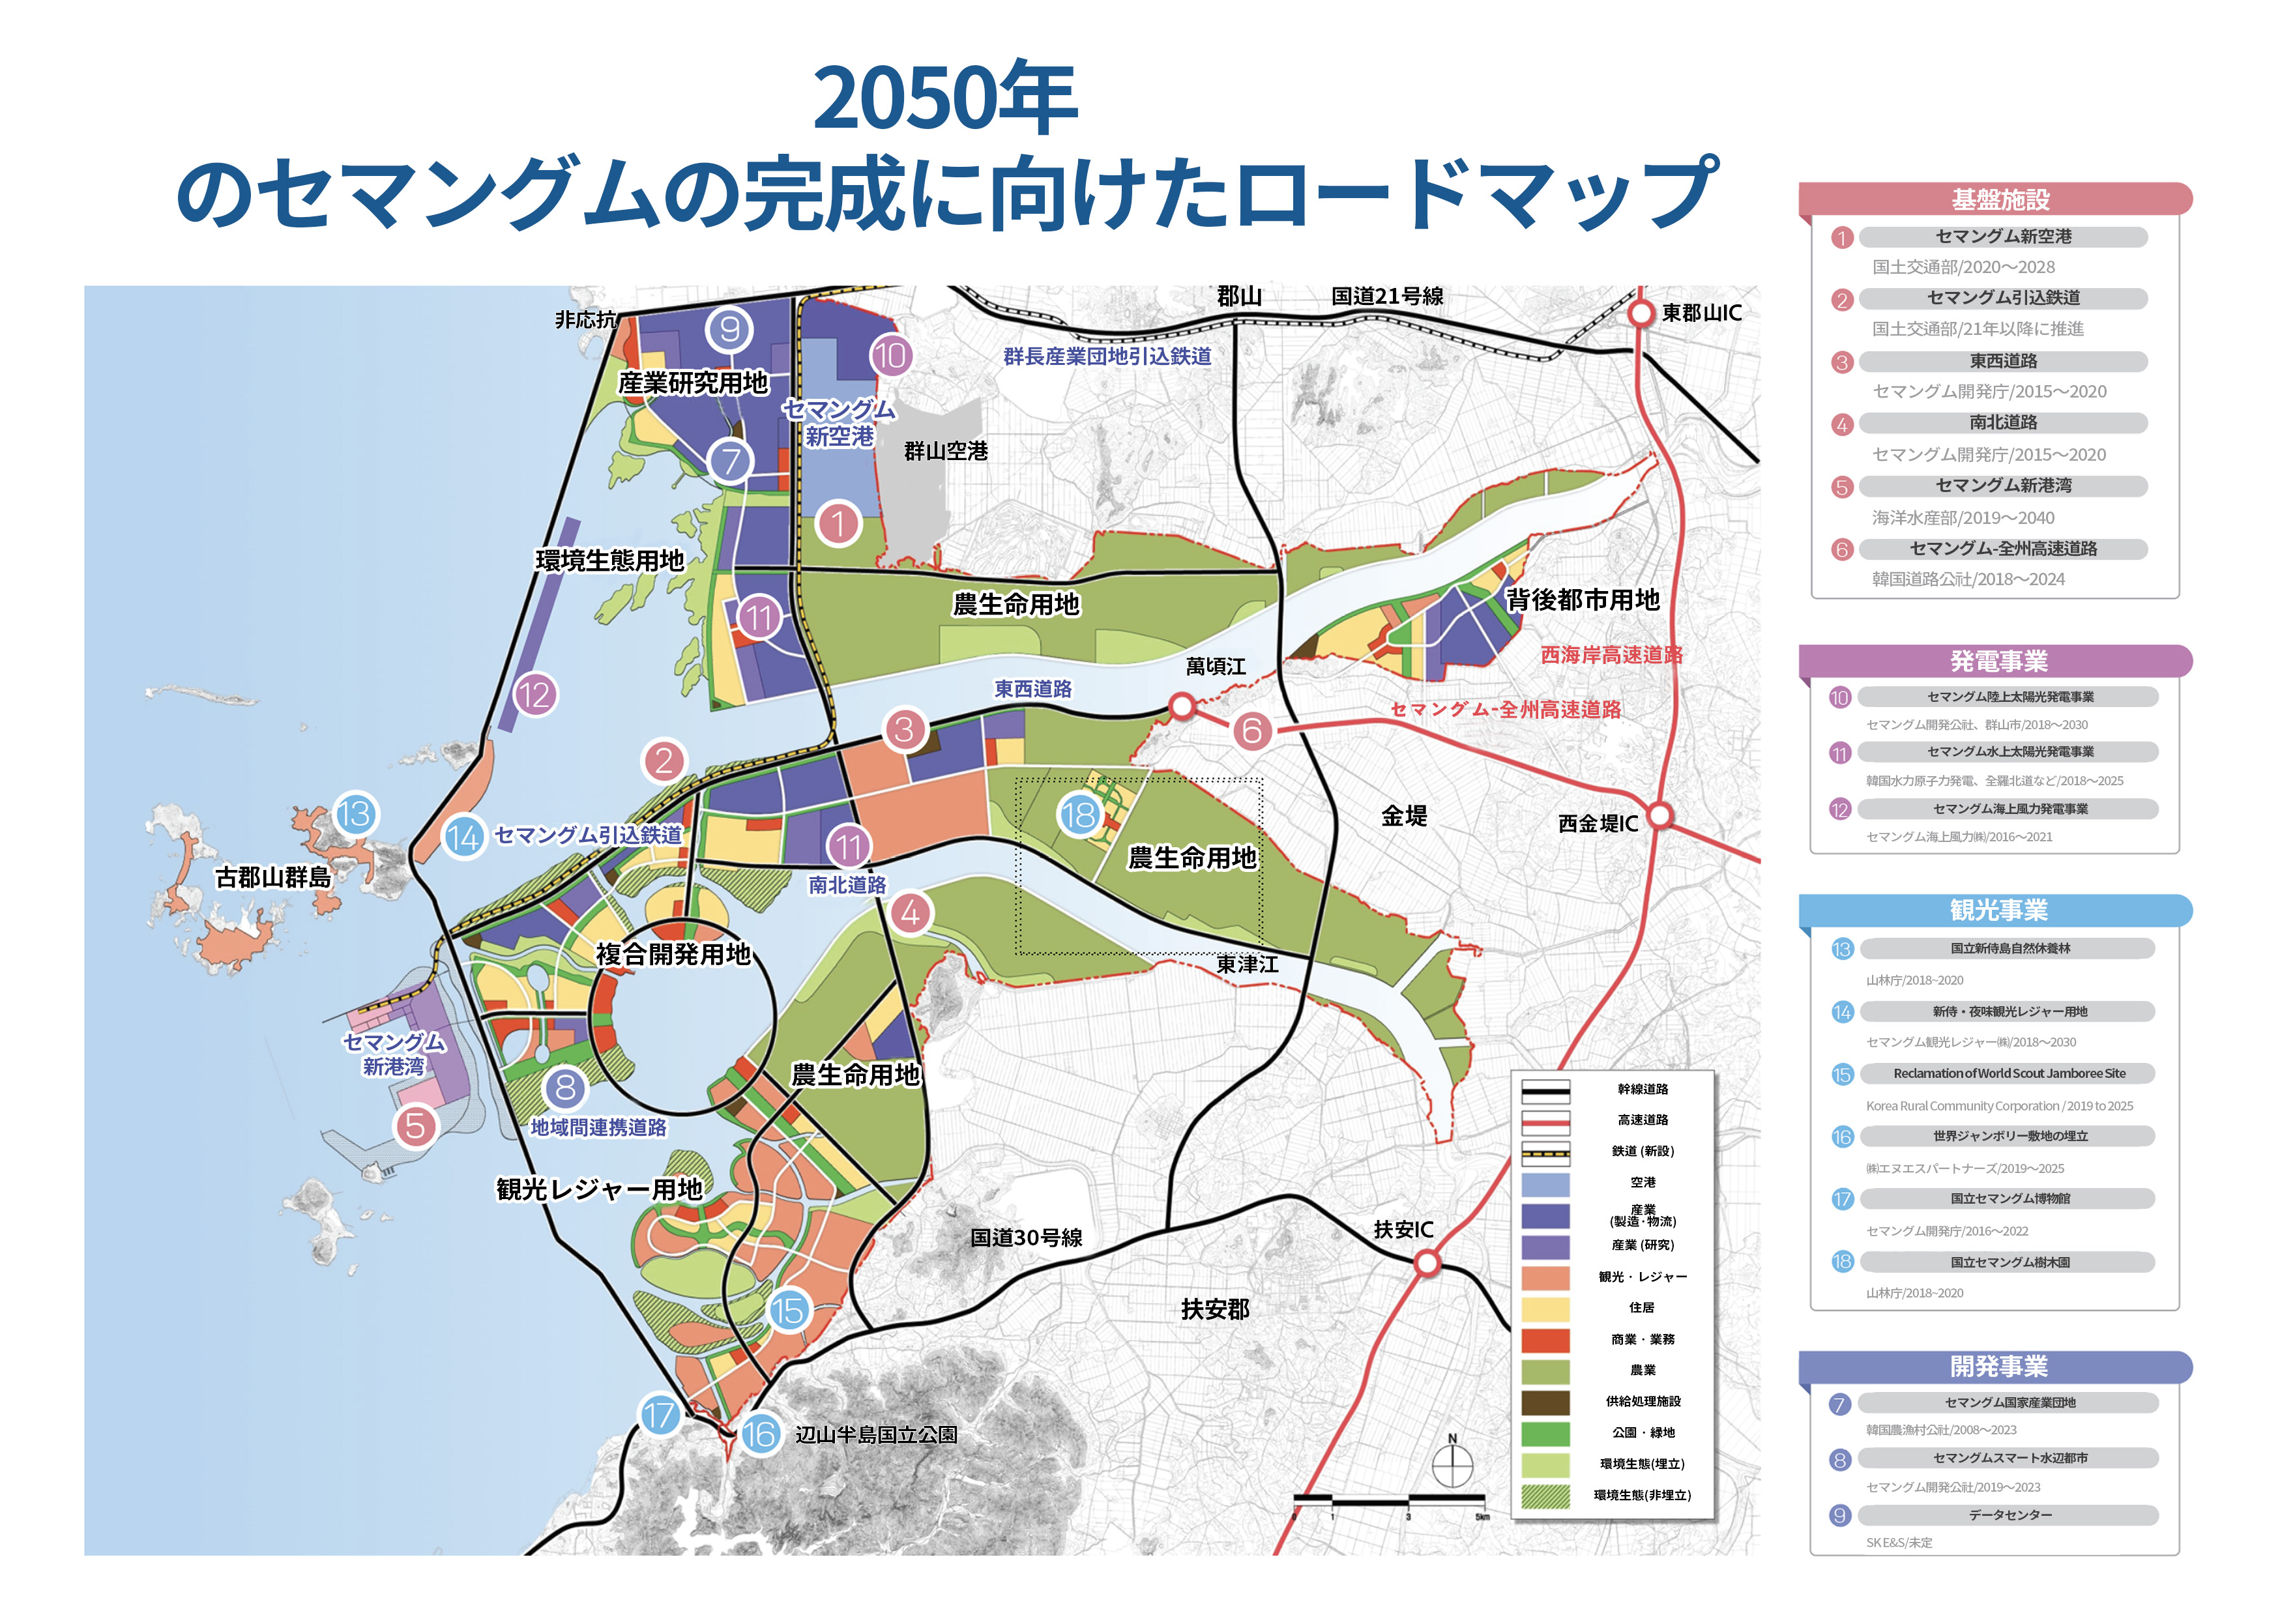 不動産博覧会「チプコノミ」でセマングム水辺都市を広報 - 2050年 のセマングムの完成に向けたロードマップ.jpg